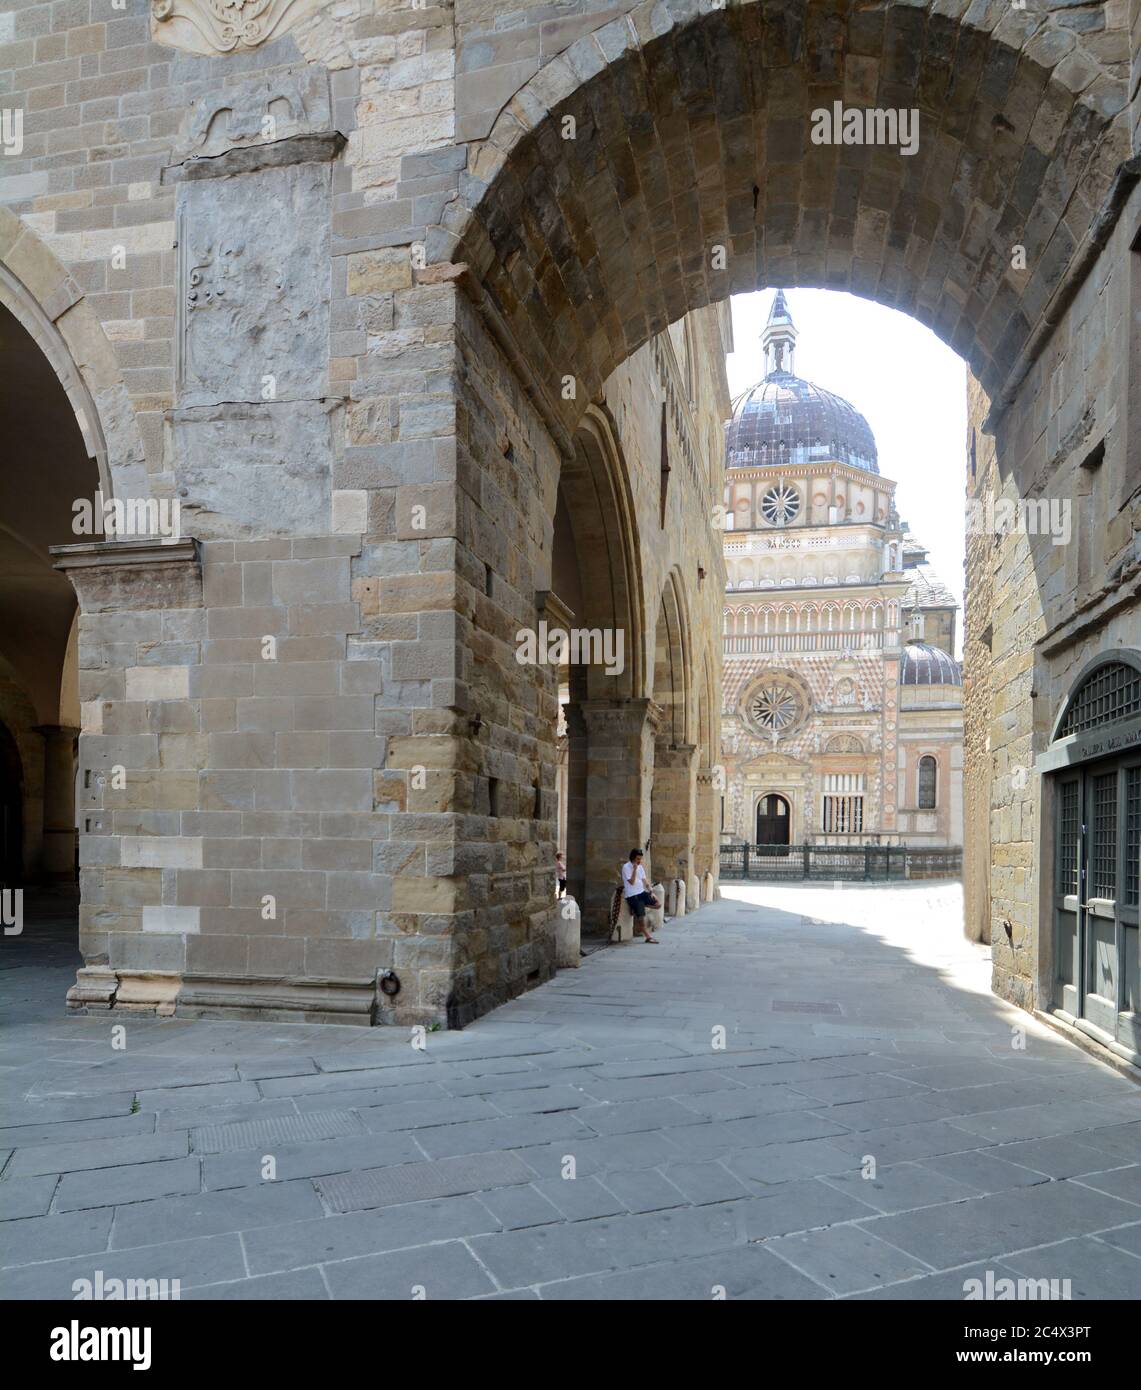 Il Palazzo della ragione è un edificio storico della città di Bergamo risalente al XII secolo. Accanto si trova la Cappella Colleoni, una Renaissa Foto Stock